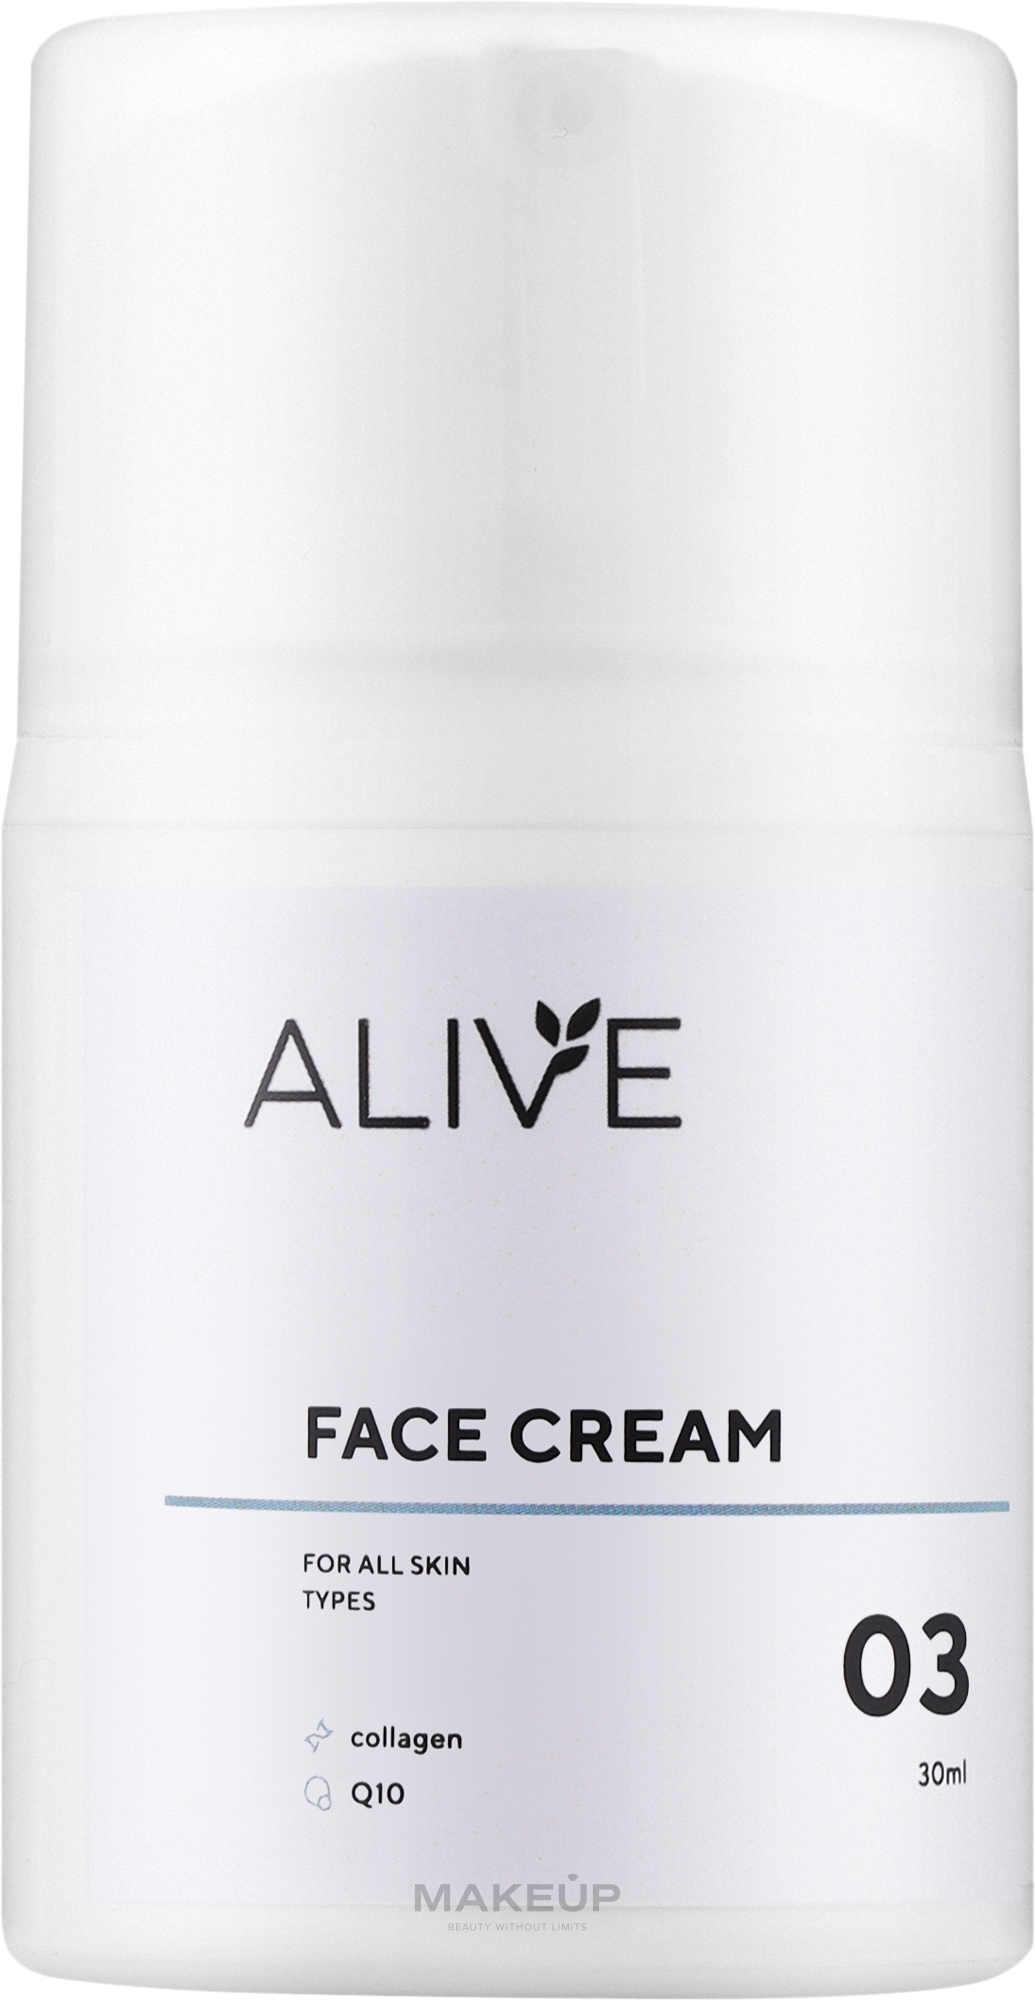 Крем для всех типов кожи для борьбы с морщинами и их профилактики - ALIVE Cosmetics Face Cream 03 — фото 30ml